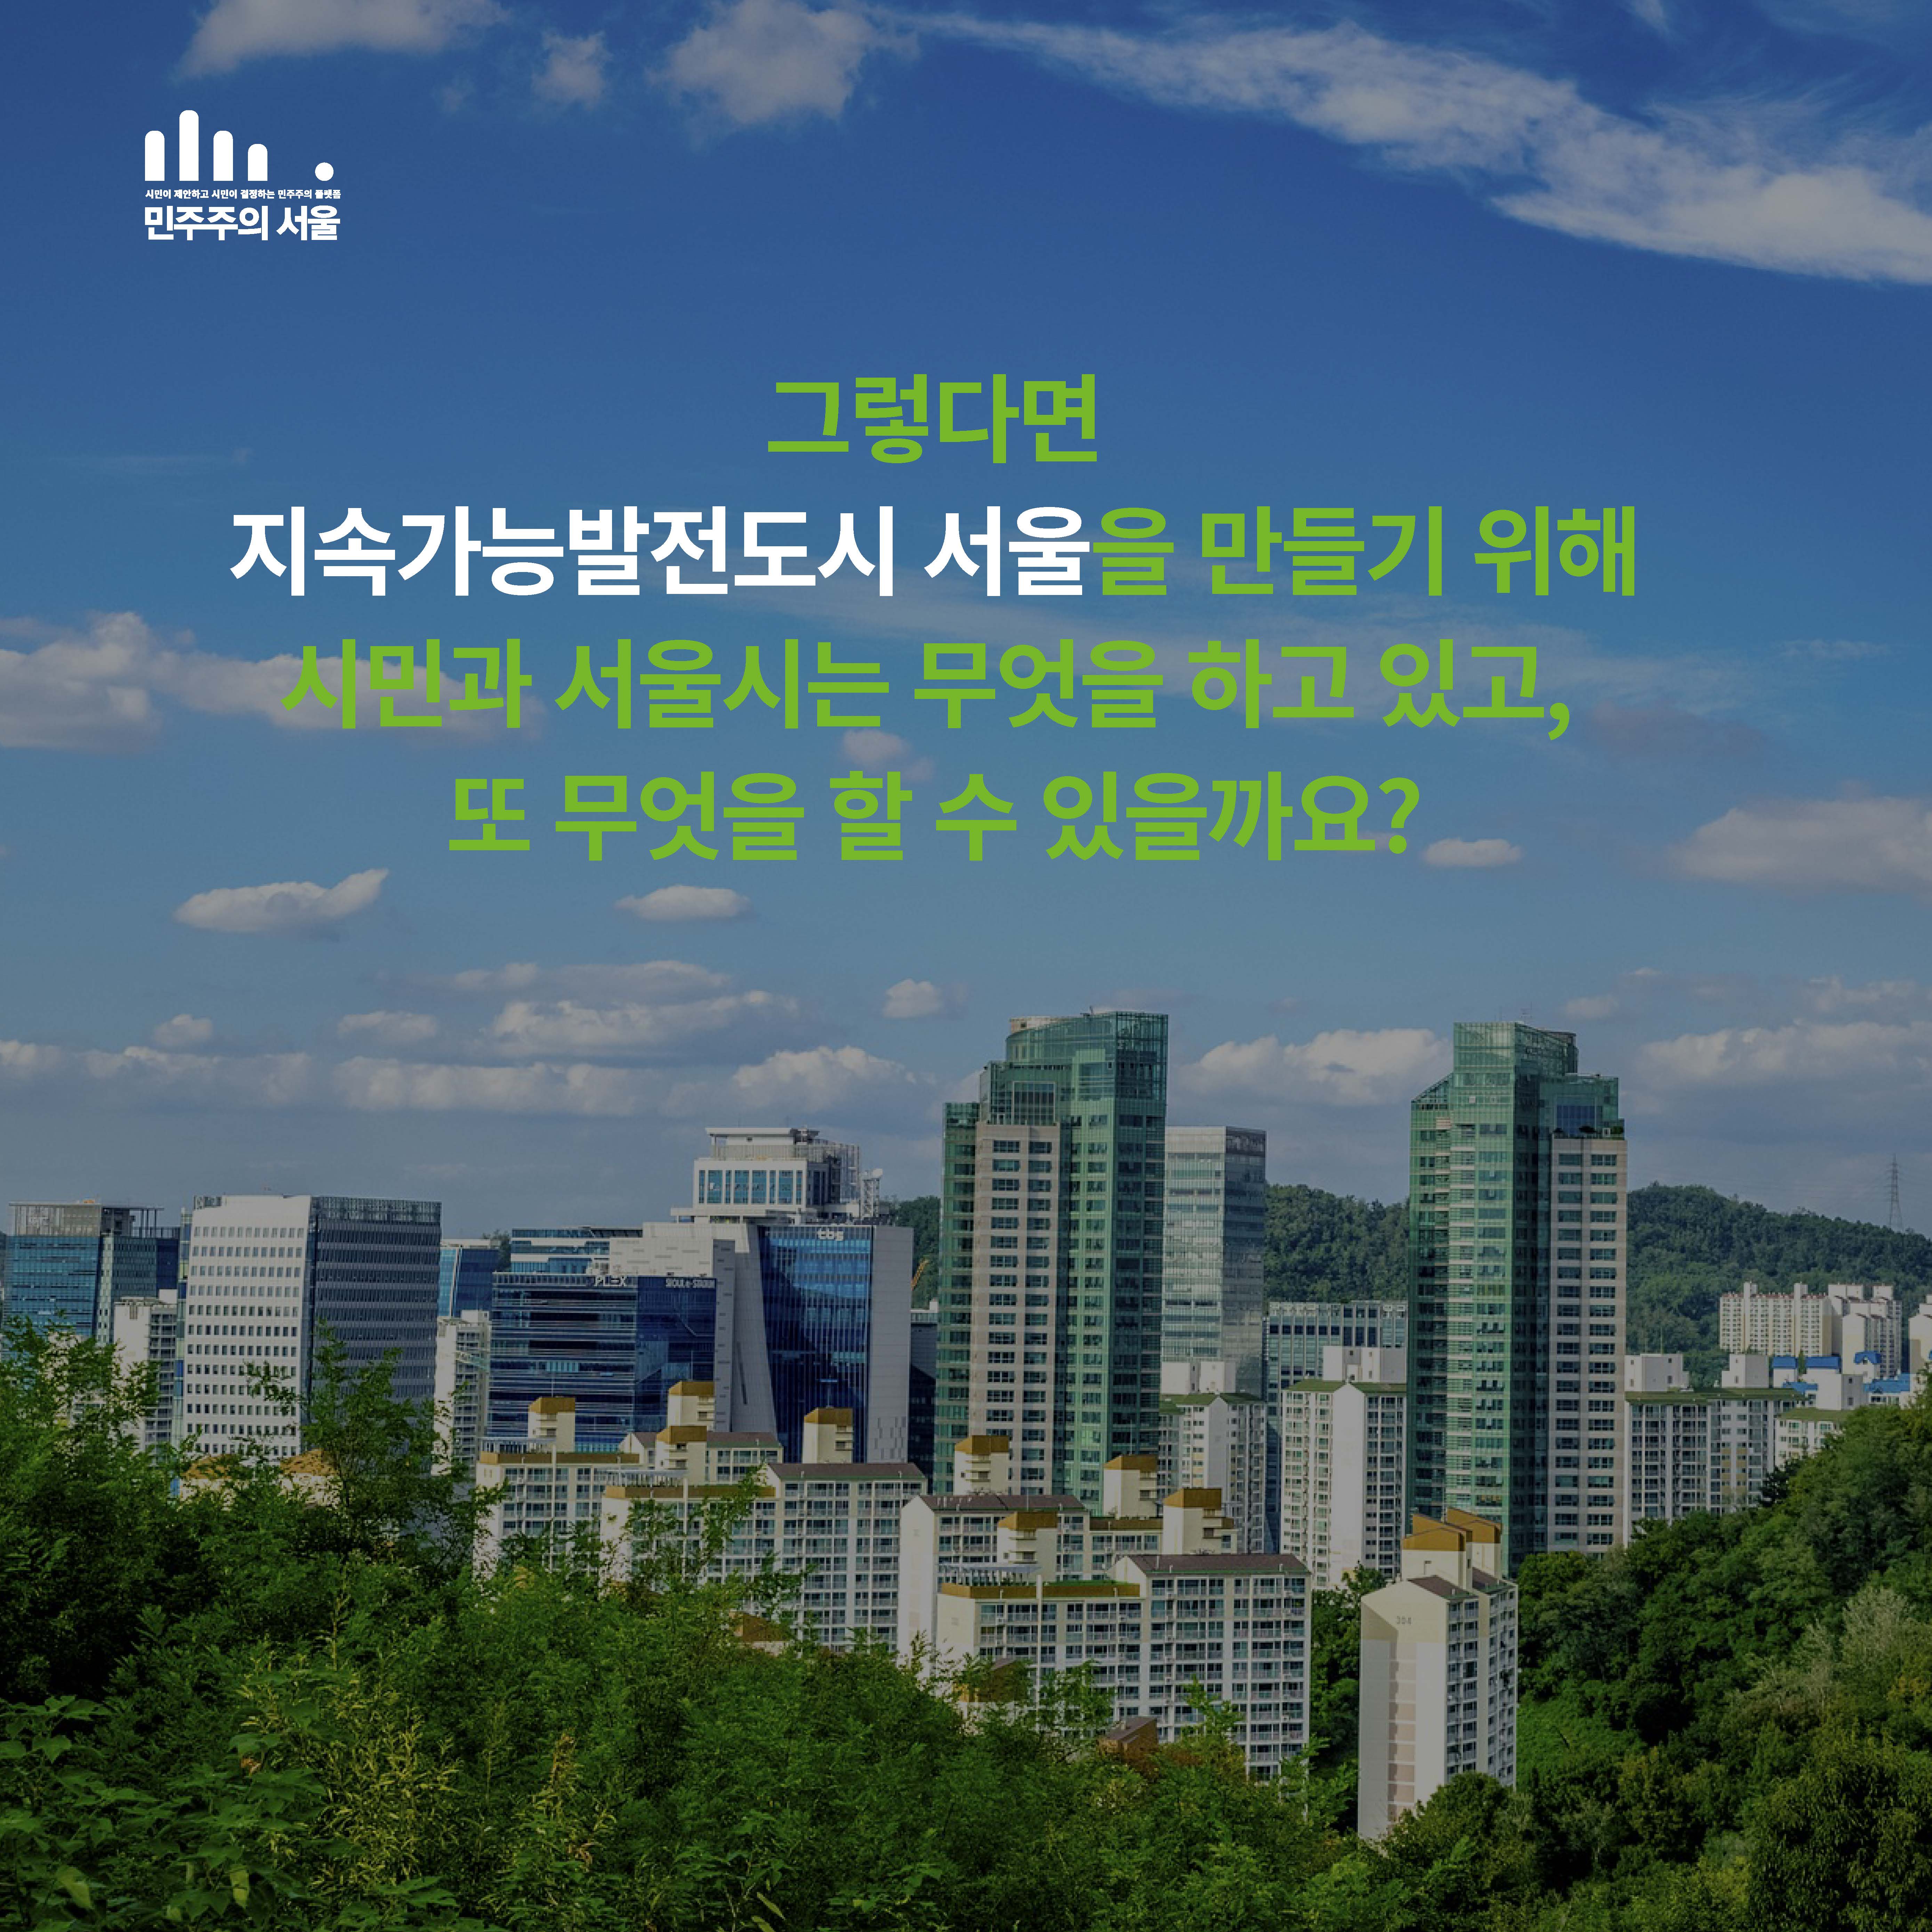 그렇다면 지속가능발전도시 서울을 만들기 위해 서울시는 무엇을 하고 있고, 또 무엇을 할 수 있을까요?